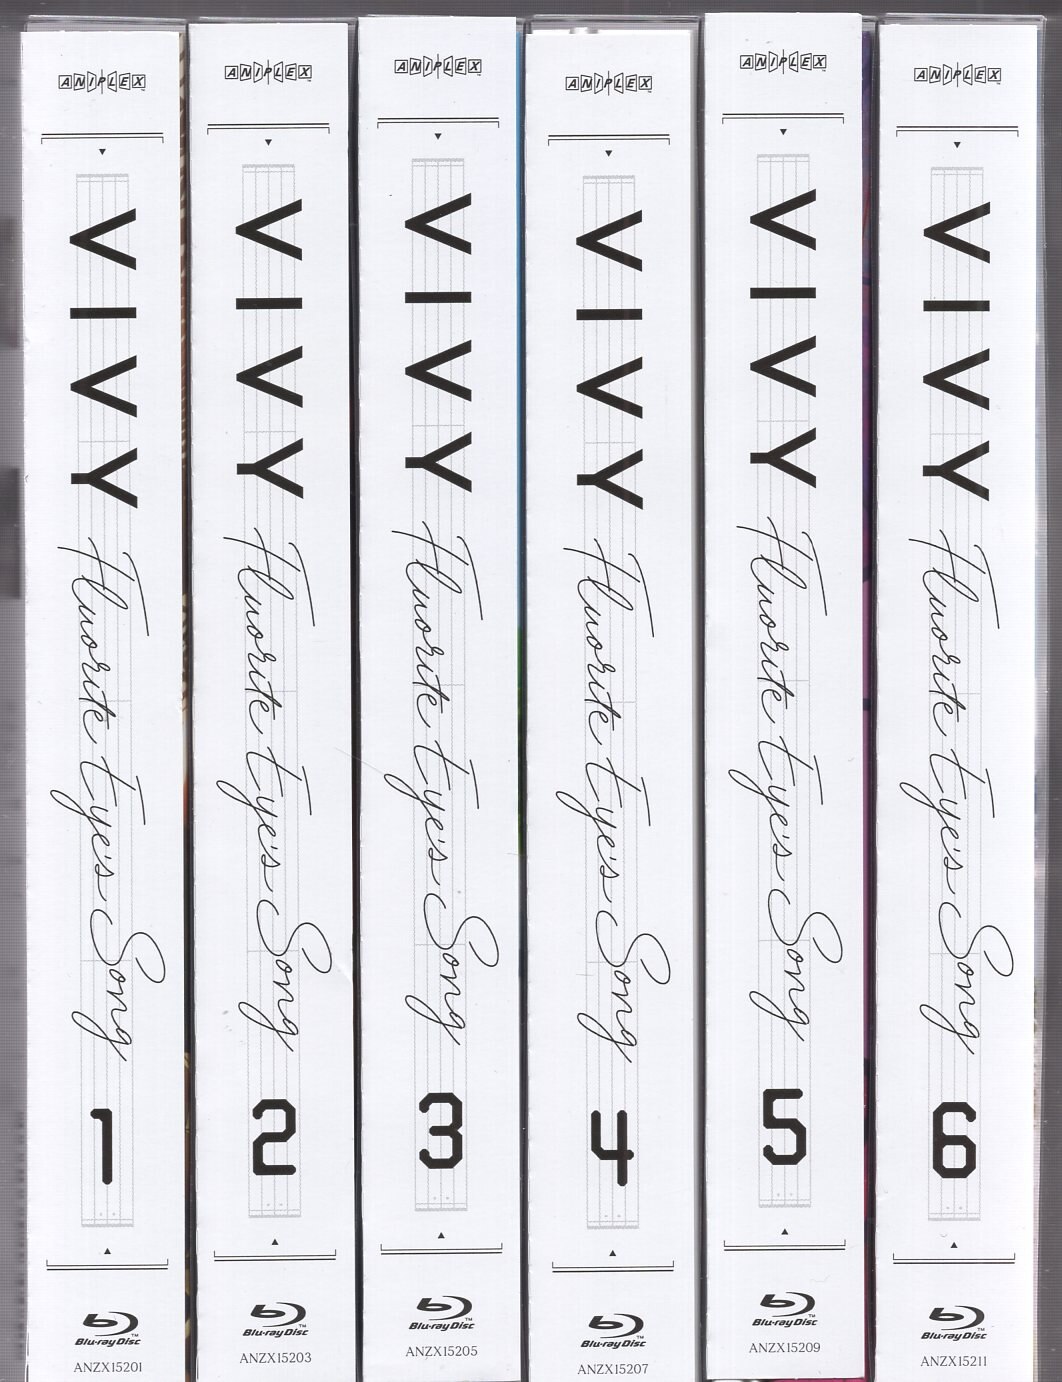 Vivy-Fluorite Eye's Song- ブルーレイ 全6巻セット